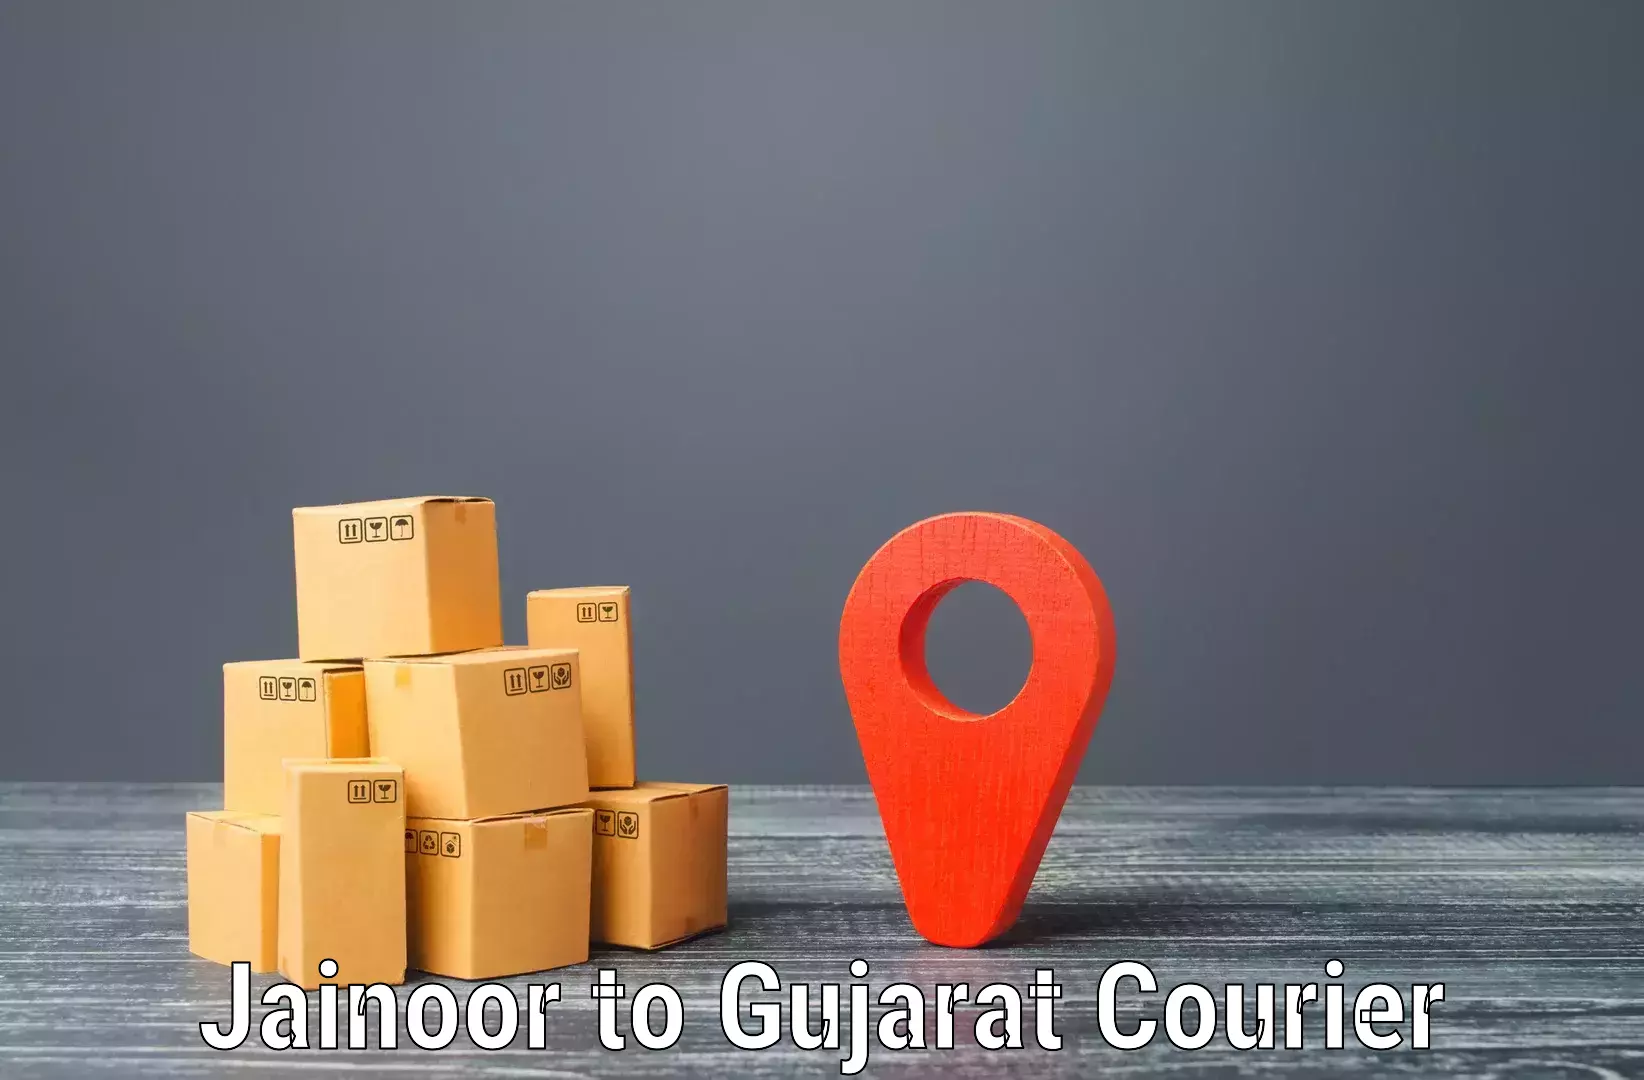 Flexible parcel services Jainoor to Matar